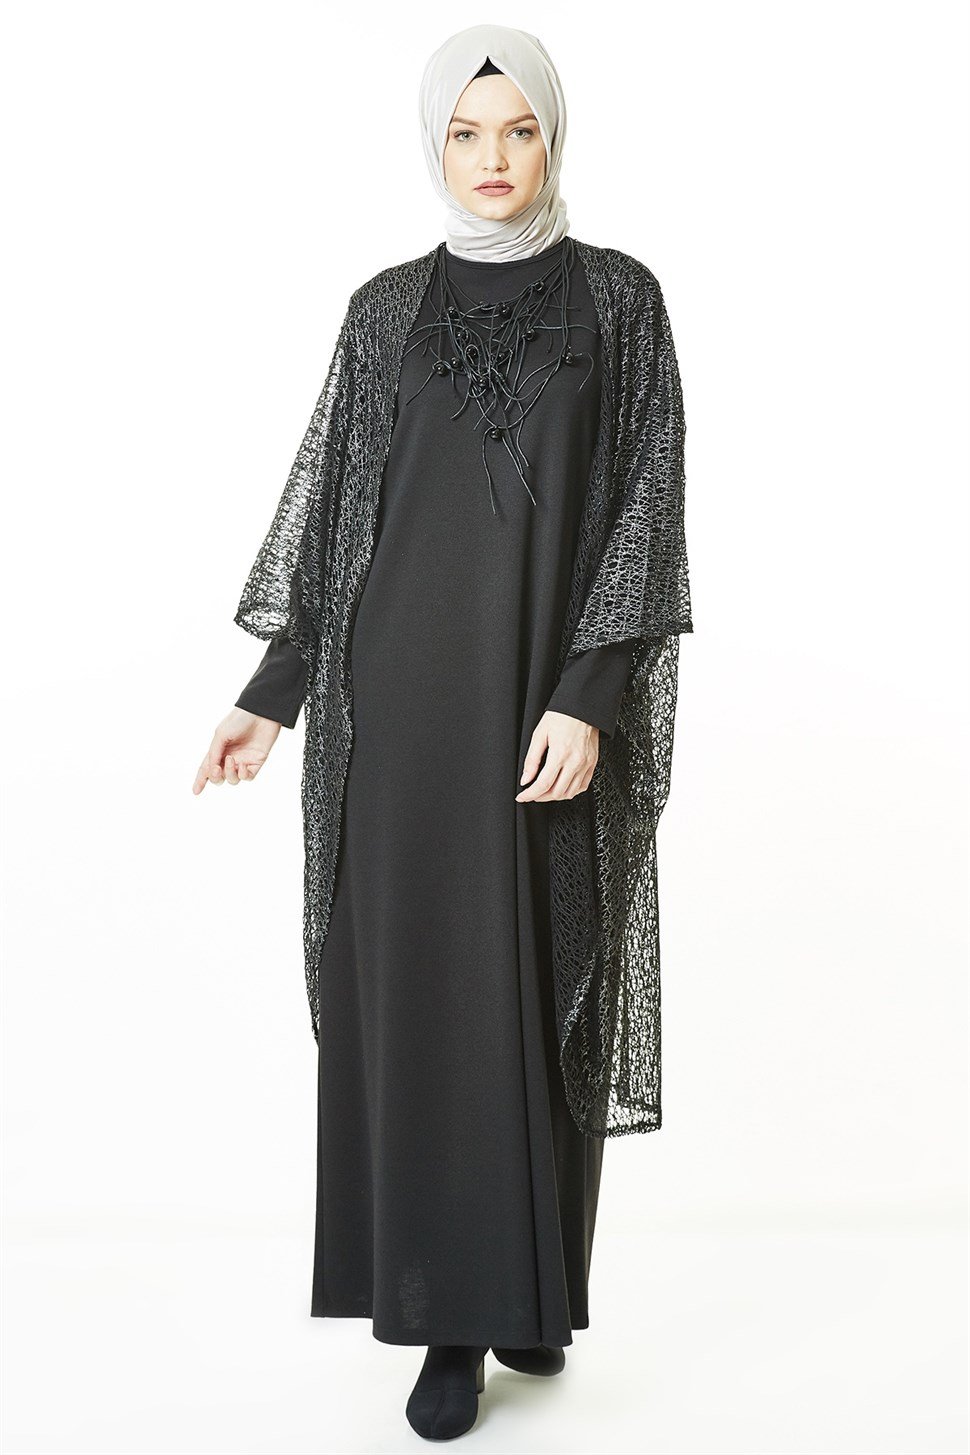 Armine Takım Elbise 8Ka9619 Zümrüt - ARMİNE | Hayatınıza Artı Değer Katar!